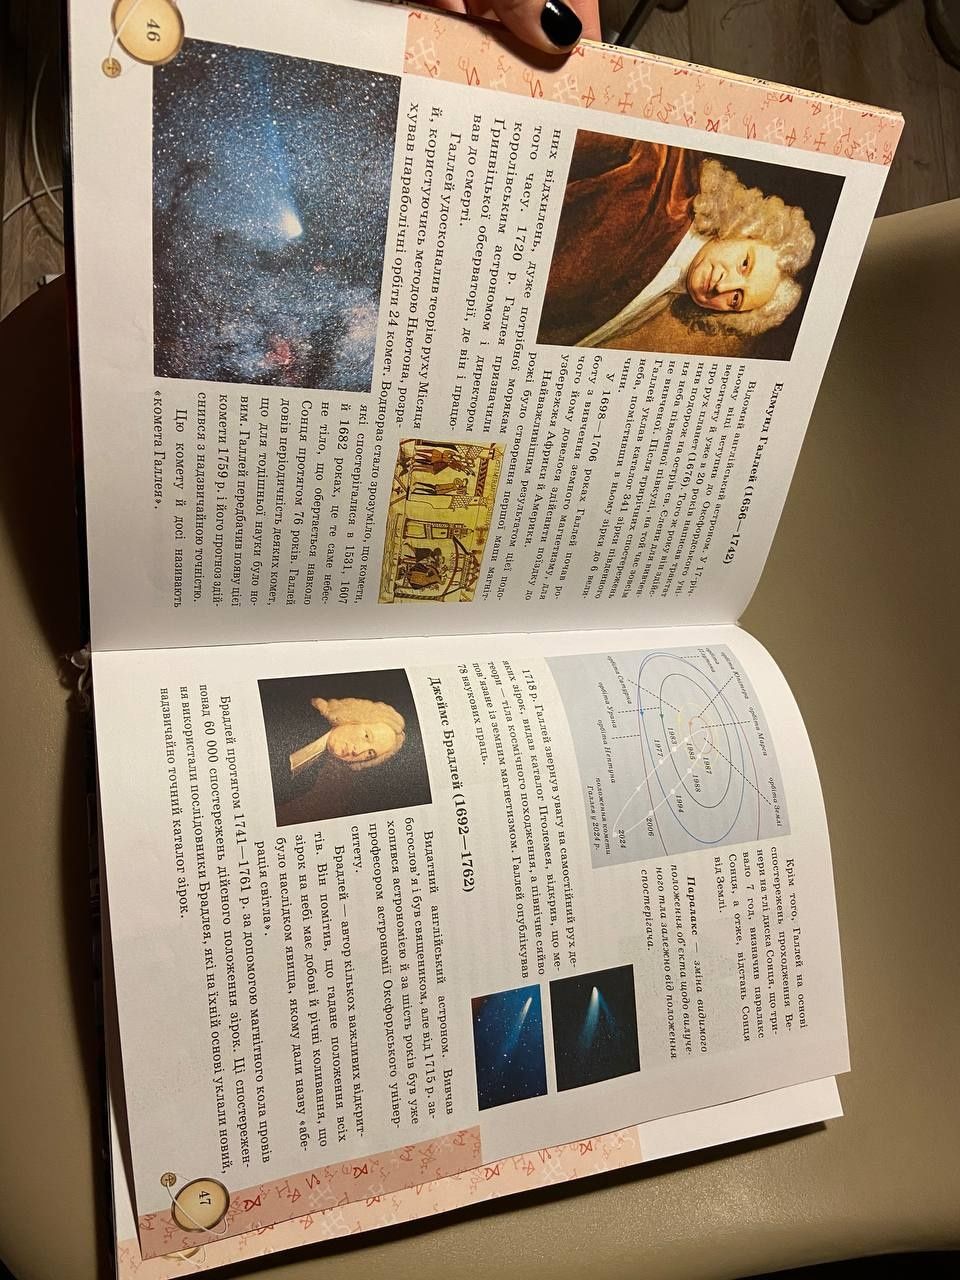 Дитяча книга Енциклопедія космосу. галактика супутник зірки космос пла